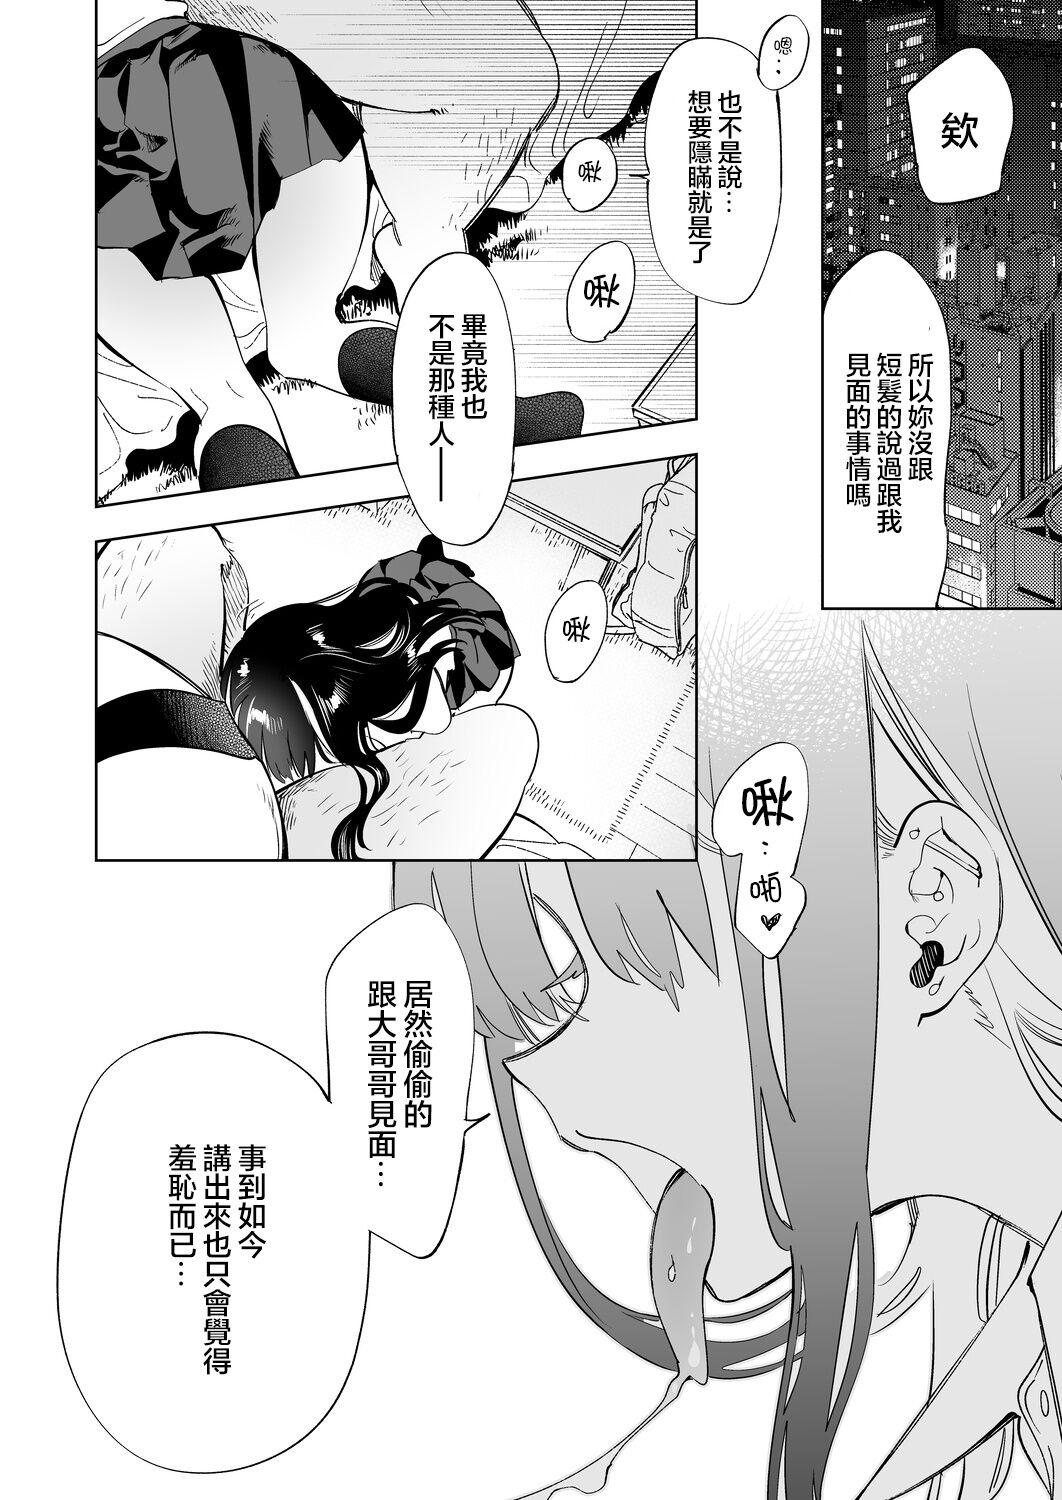 Banging Oni-san, watashitachi to ocha shimasen kaa? 2 - Original Price - Page 5